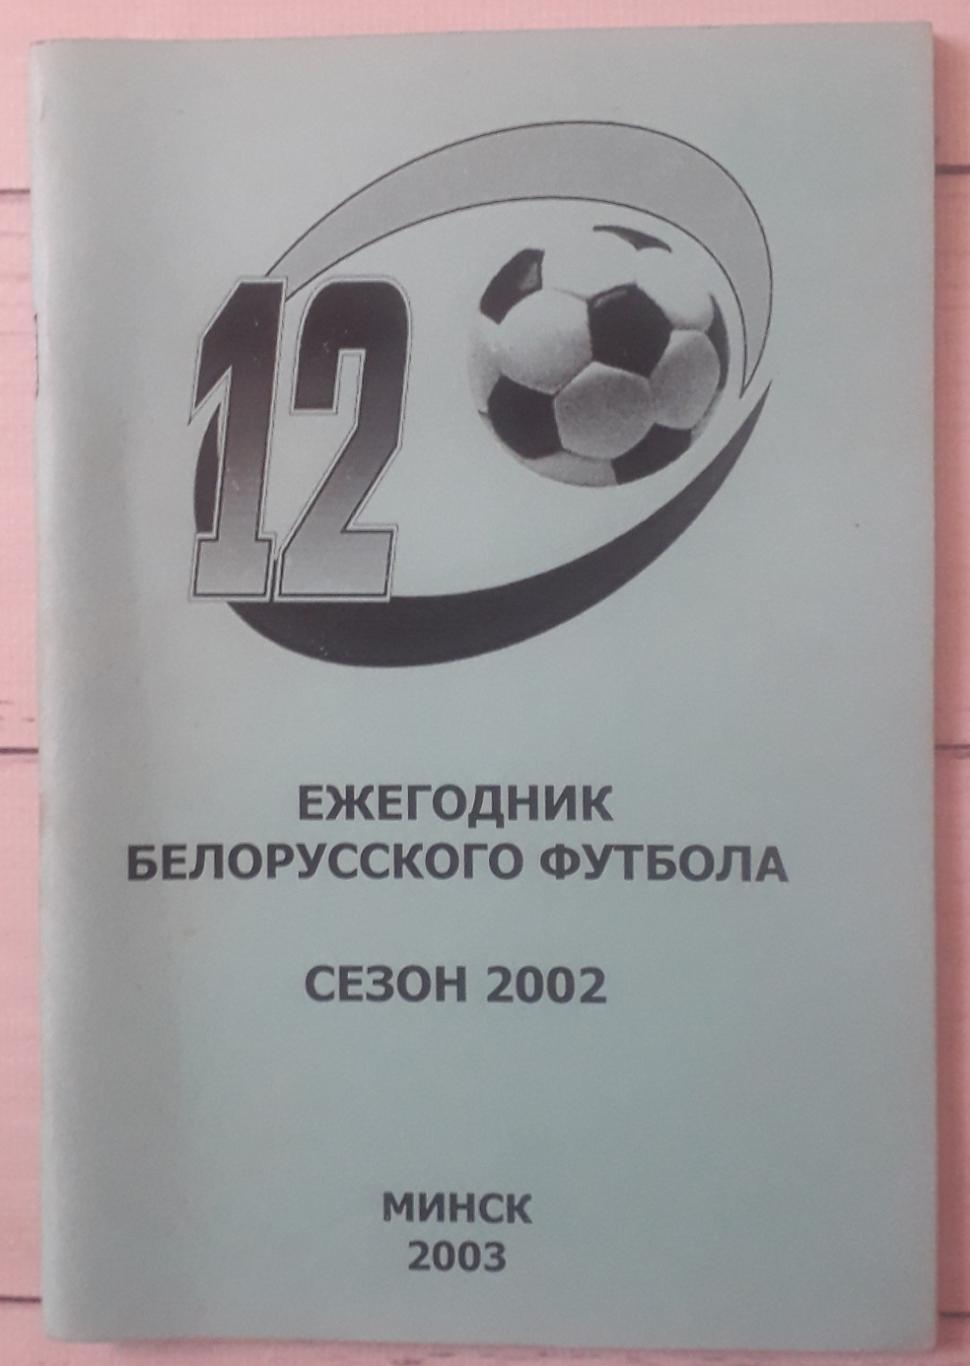 Ежегодник белорусского футбола. Сезон 2002.